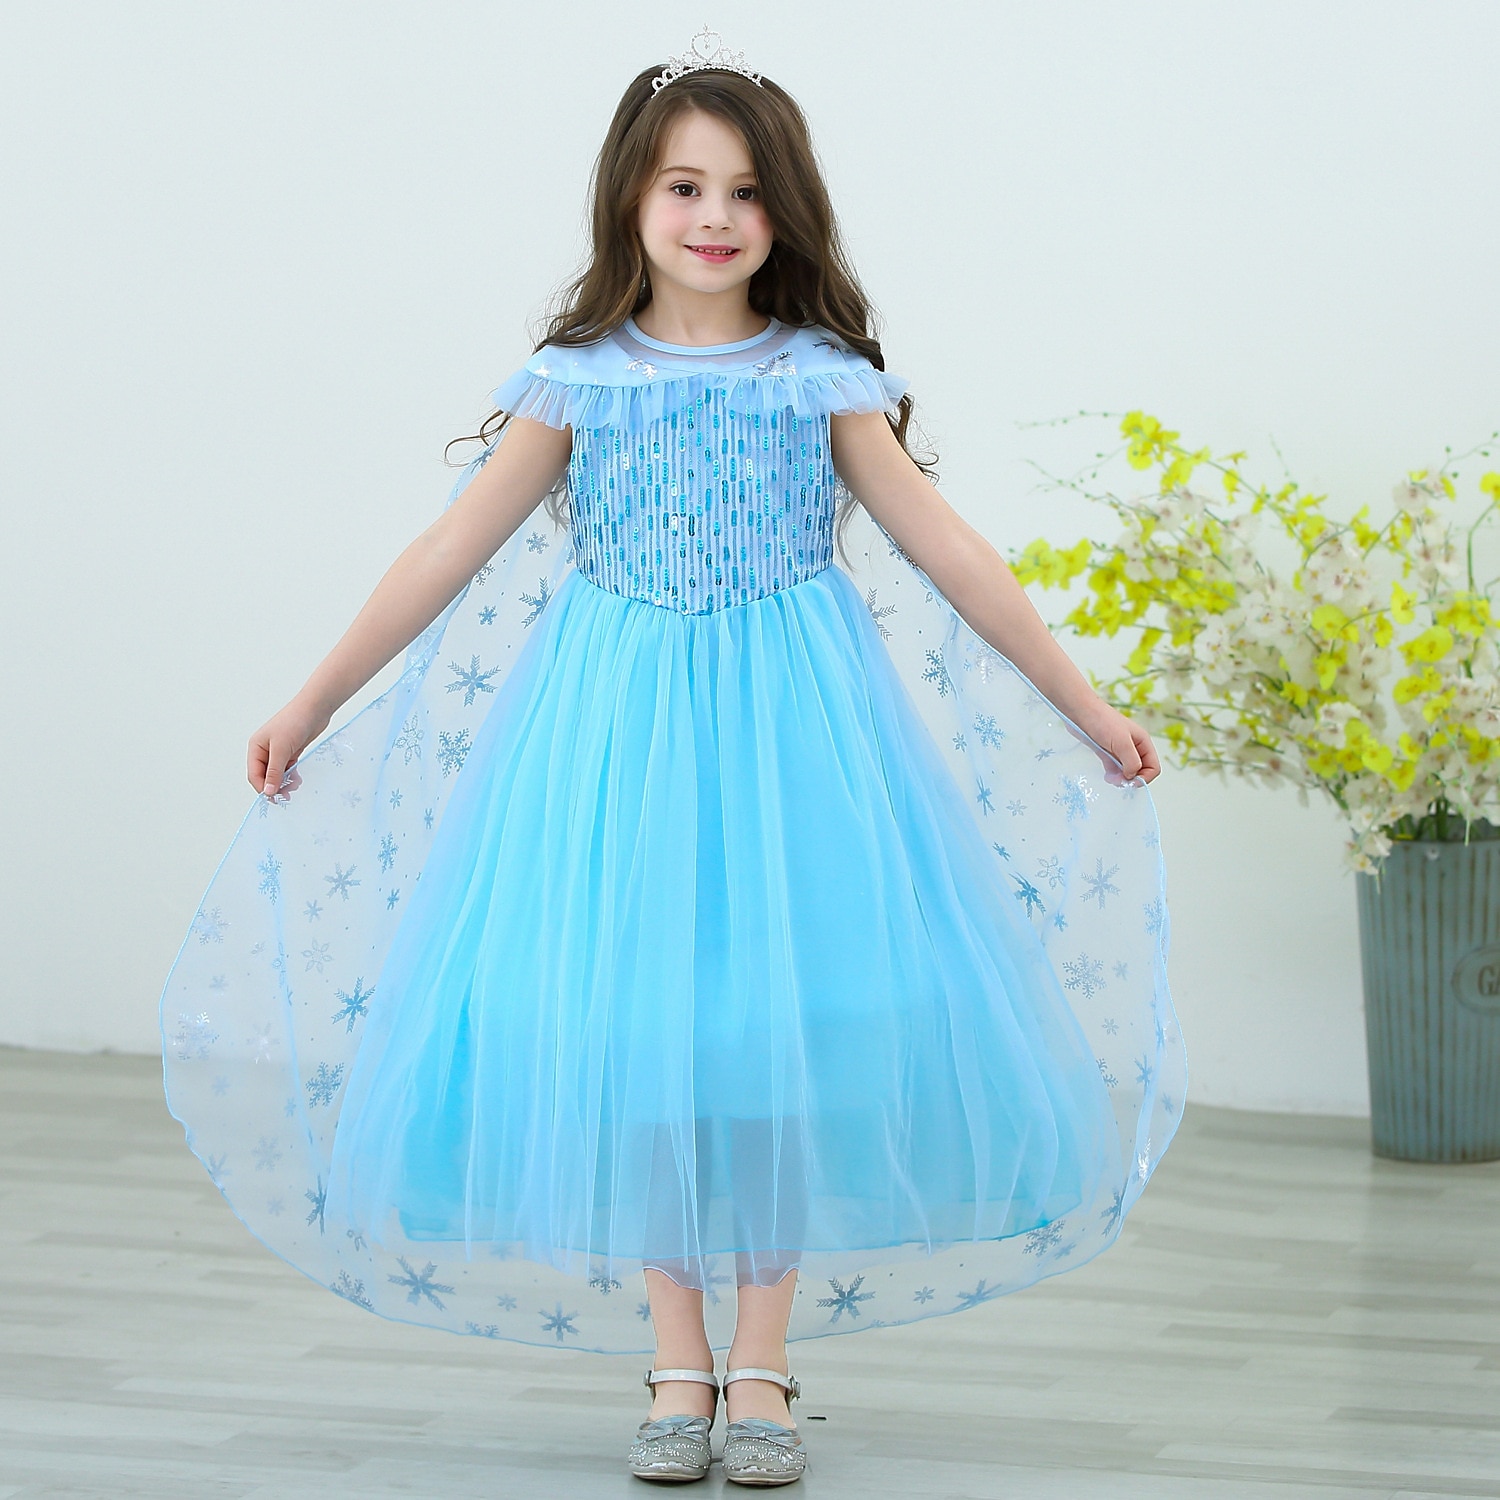 Disney Elsa Frozen Fancy Dress Costume Kids Girls 3 4 5 6 7 8 9 10 Years  Blue | eBay